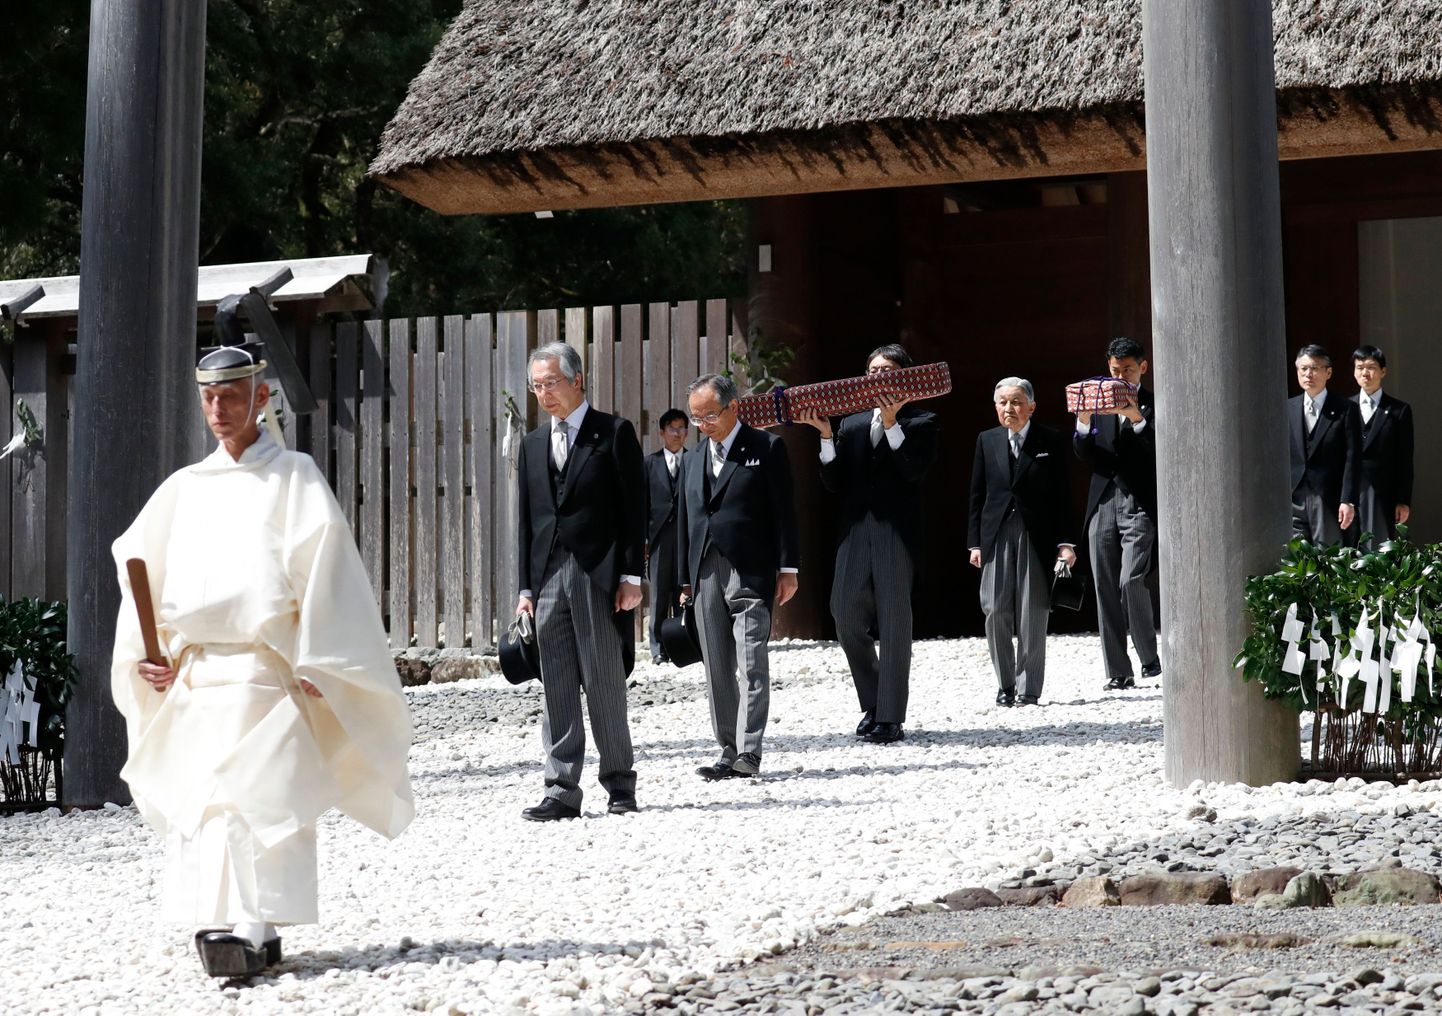 Jaapani keiser Akihito Jingu shintōpühamus Ise linnas.